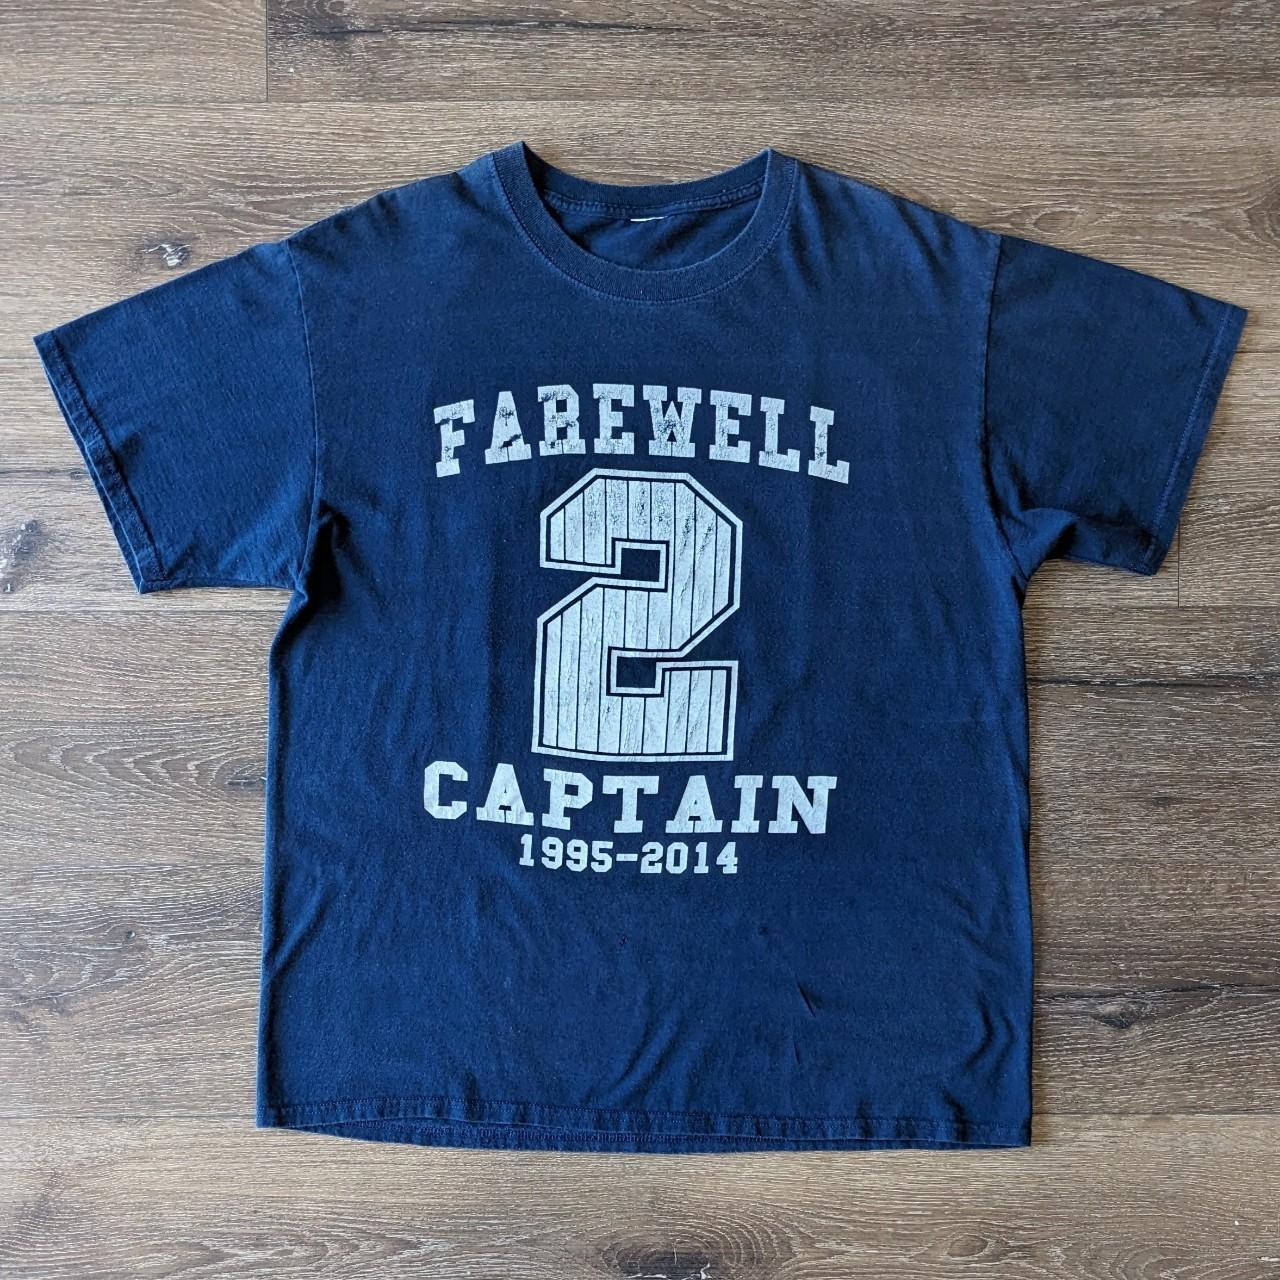 Derek Jeter Retirement-New York Yankees Captain-Re2pect T-Shirt